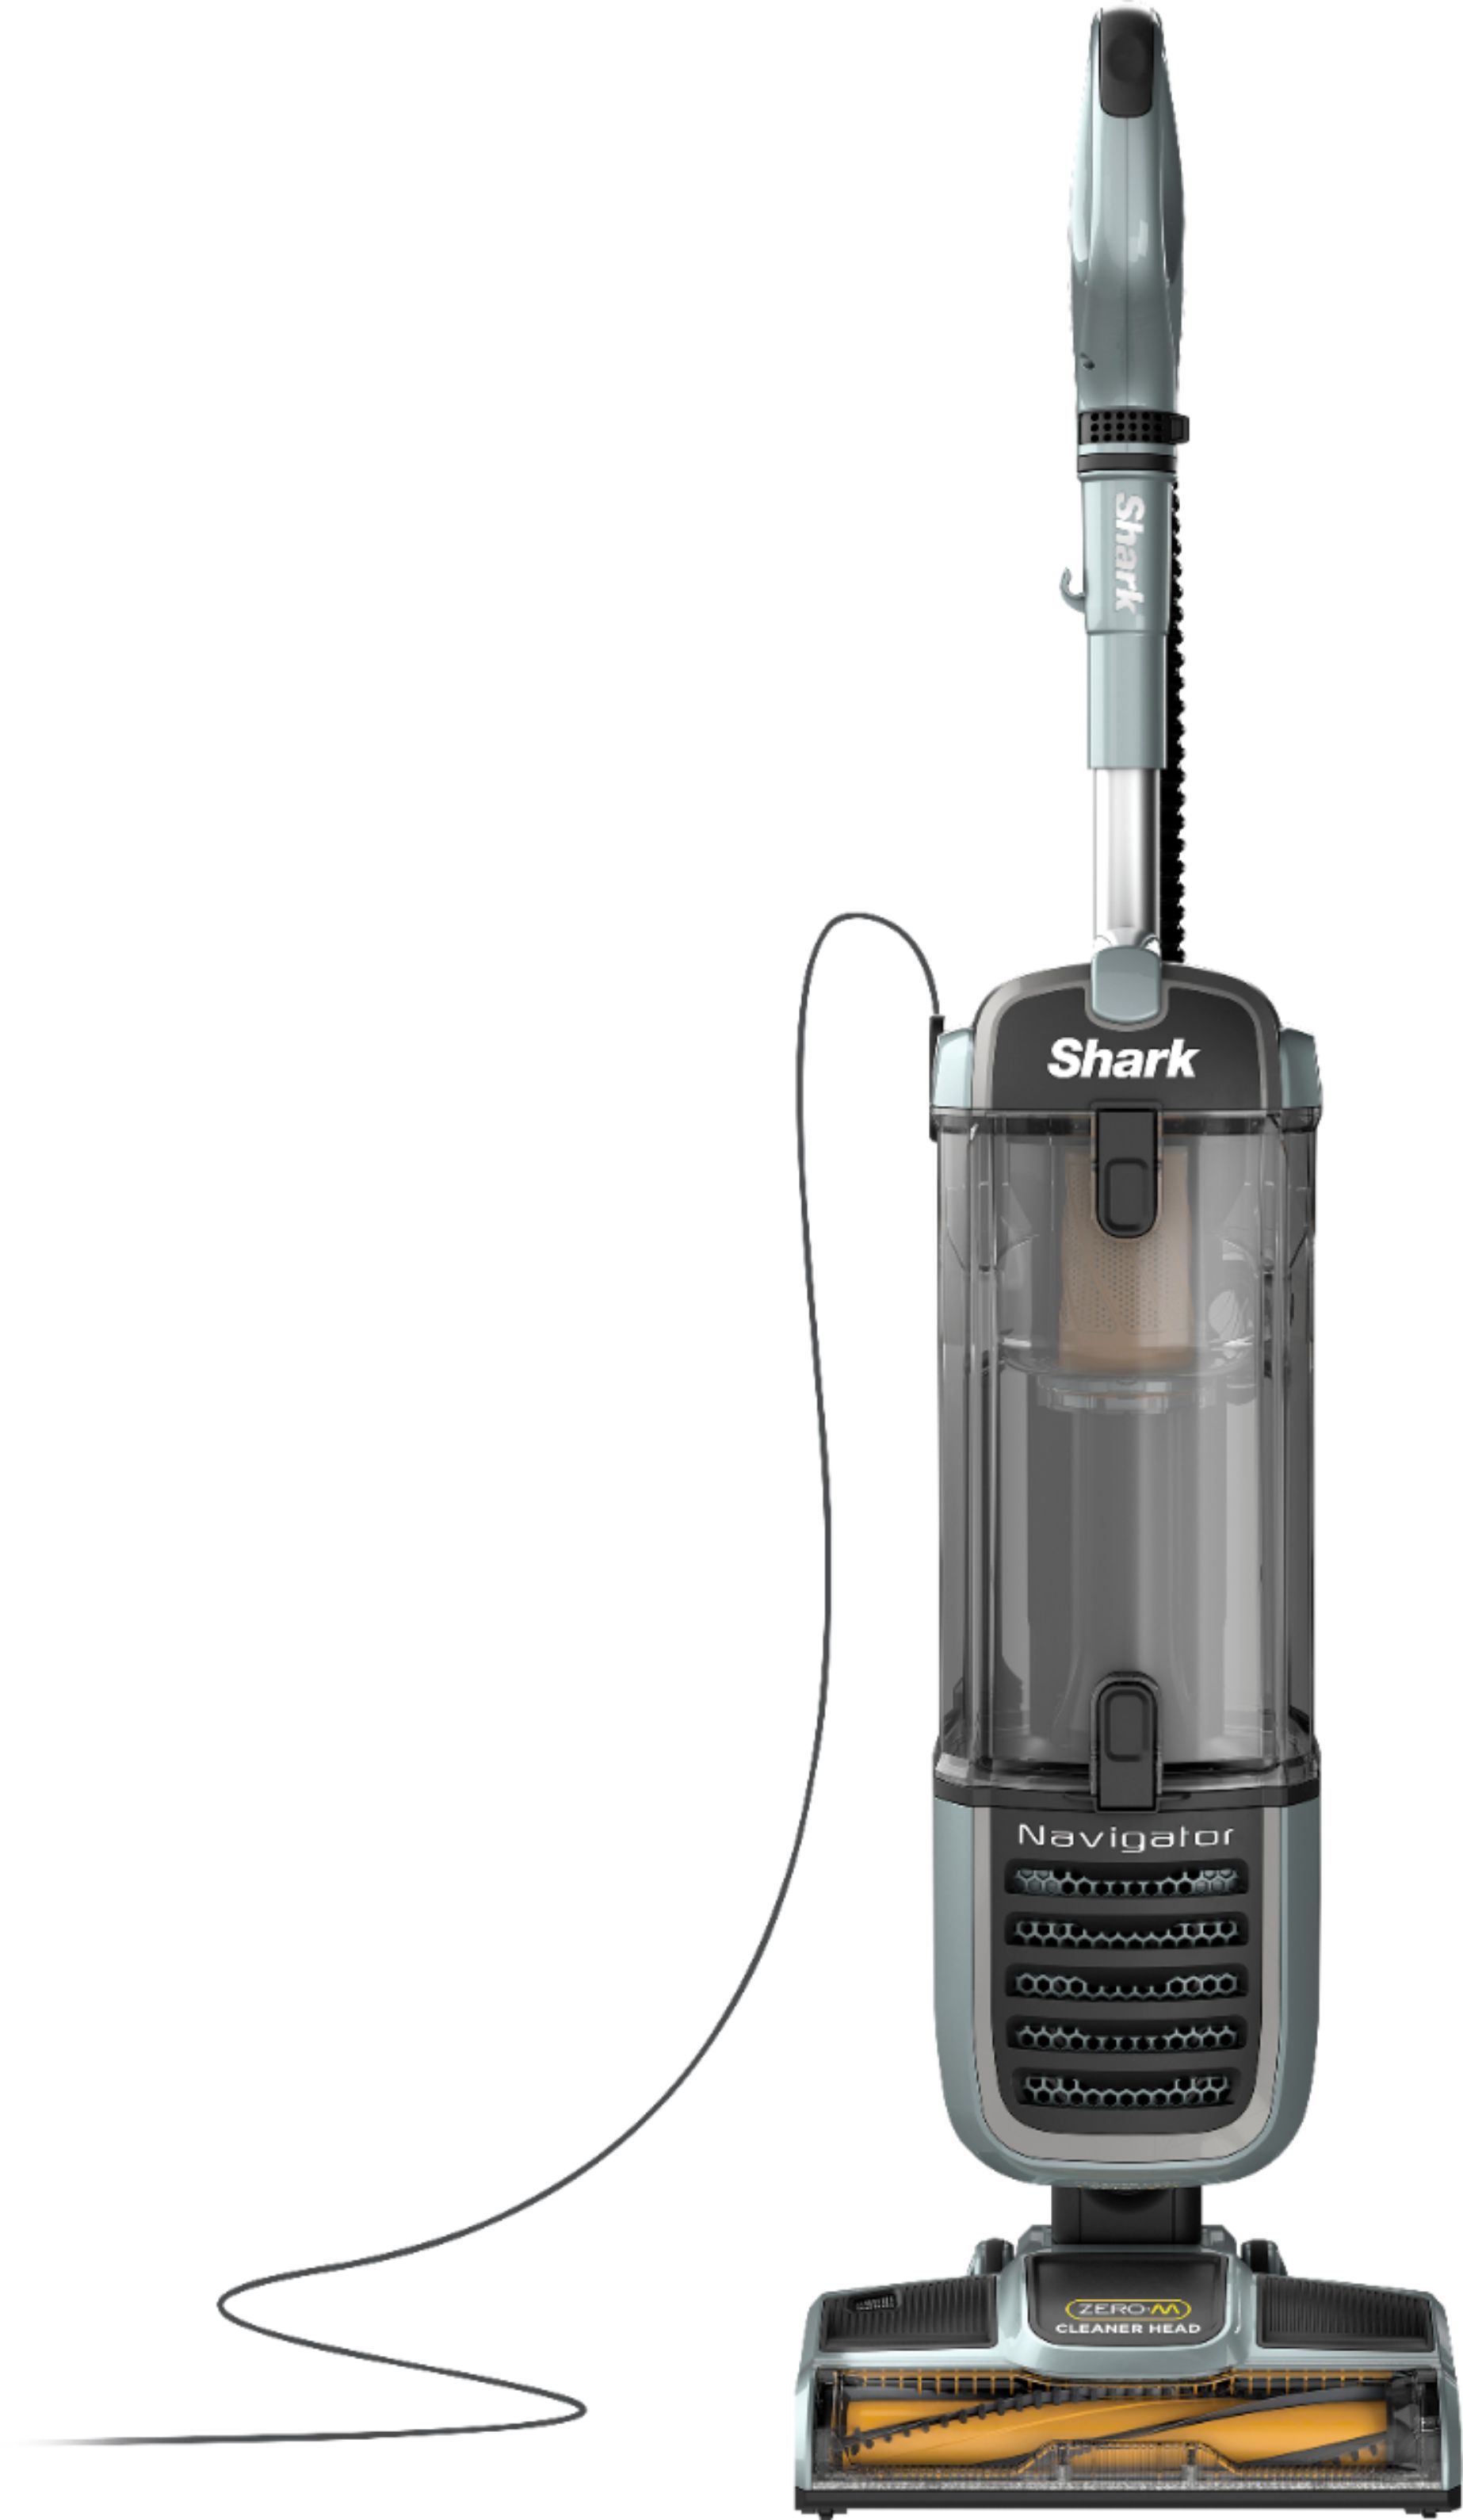 Shark Navigator Self Cleaning Brushroll, Best Shark Vacuum For Hardwood Floors And Carpet